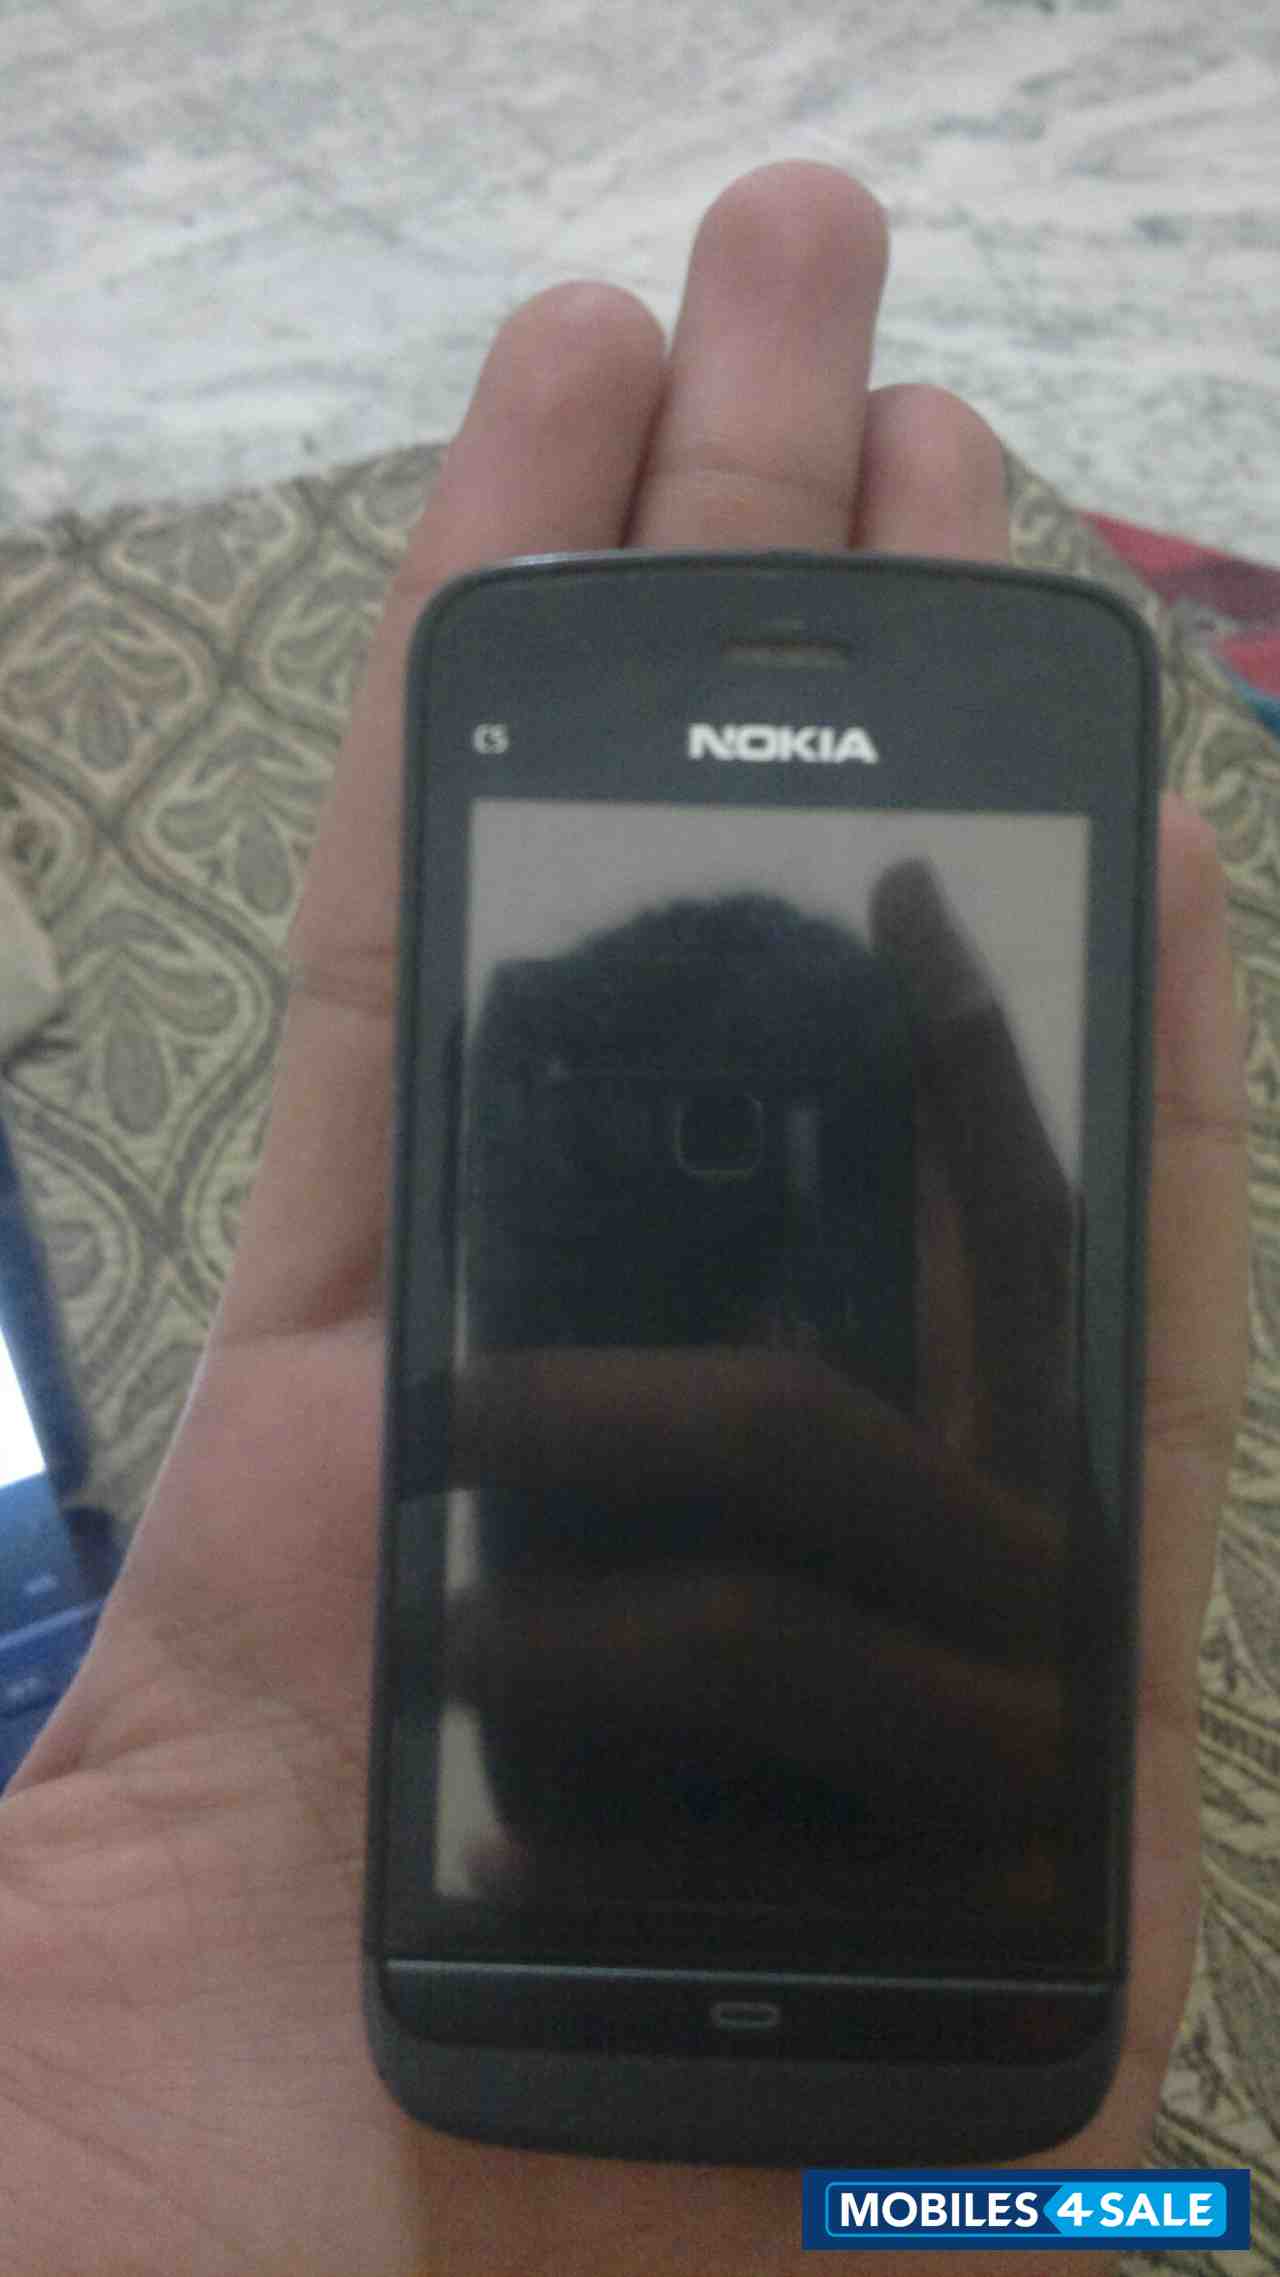 Black Nokia C5-03